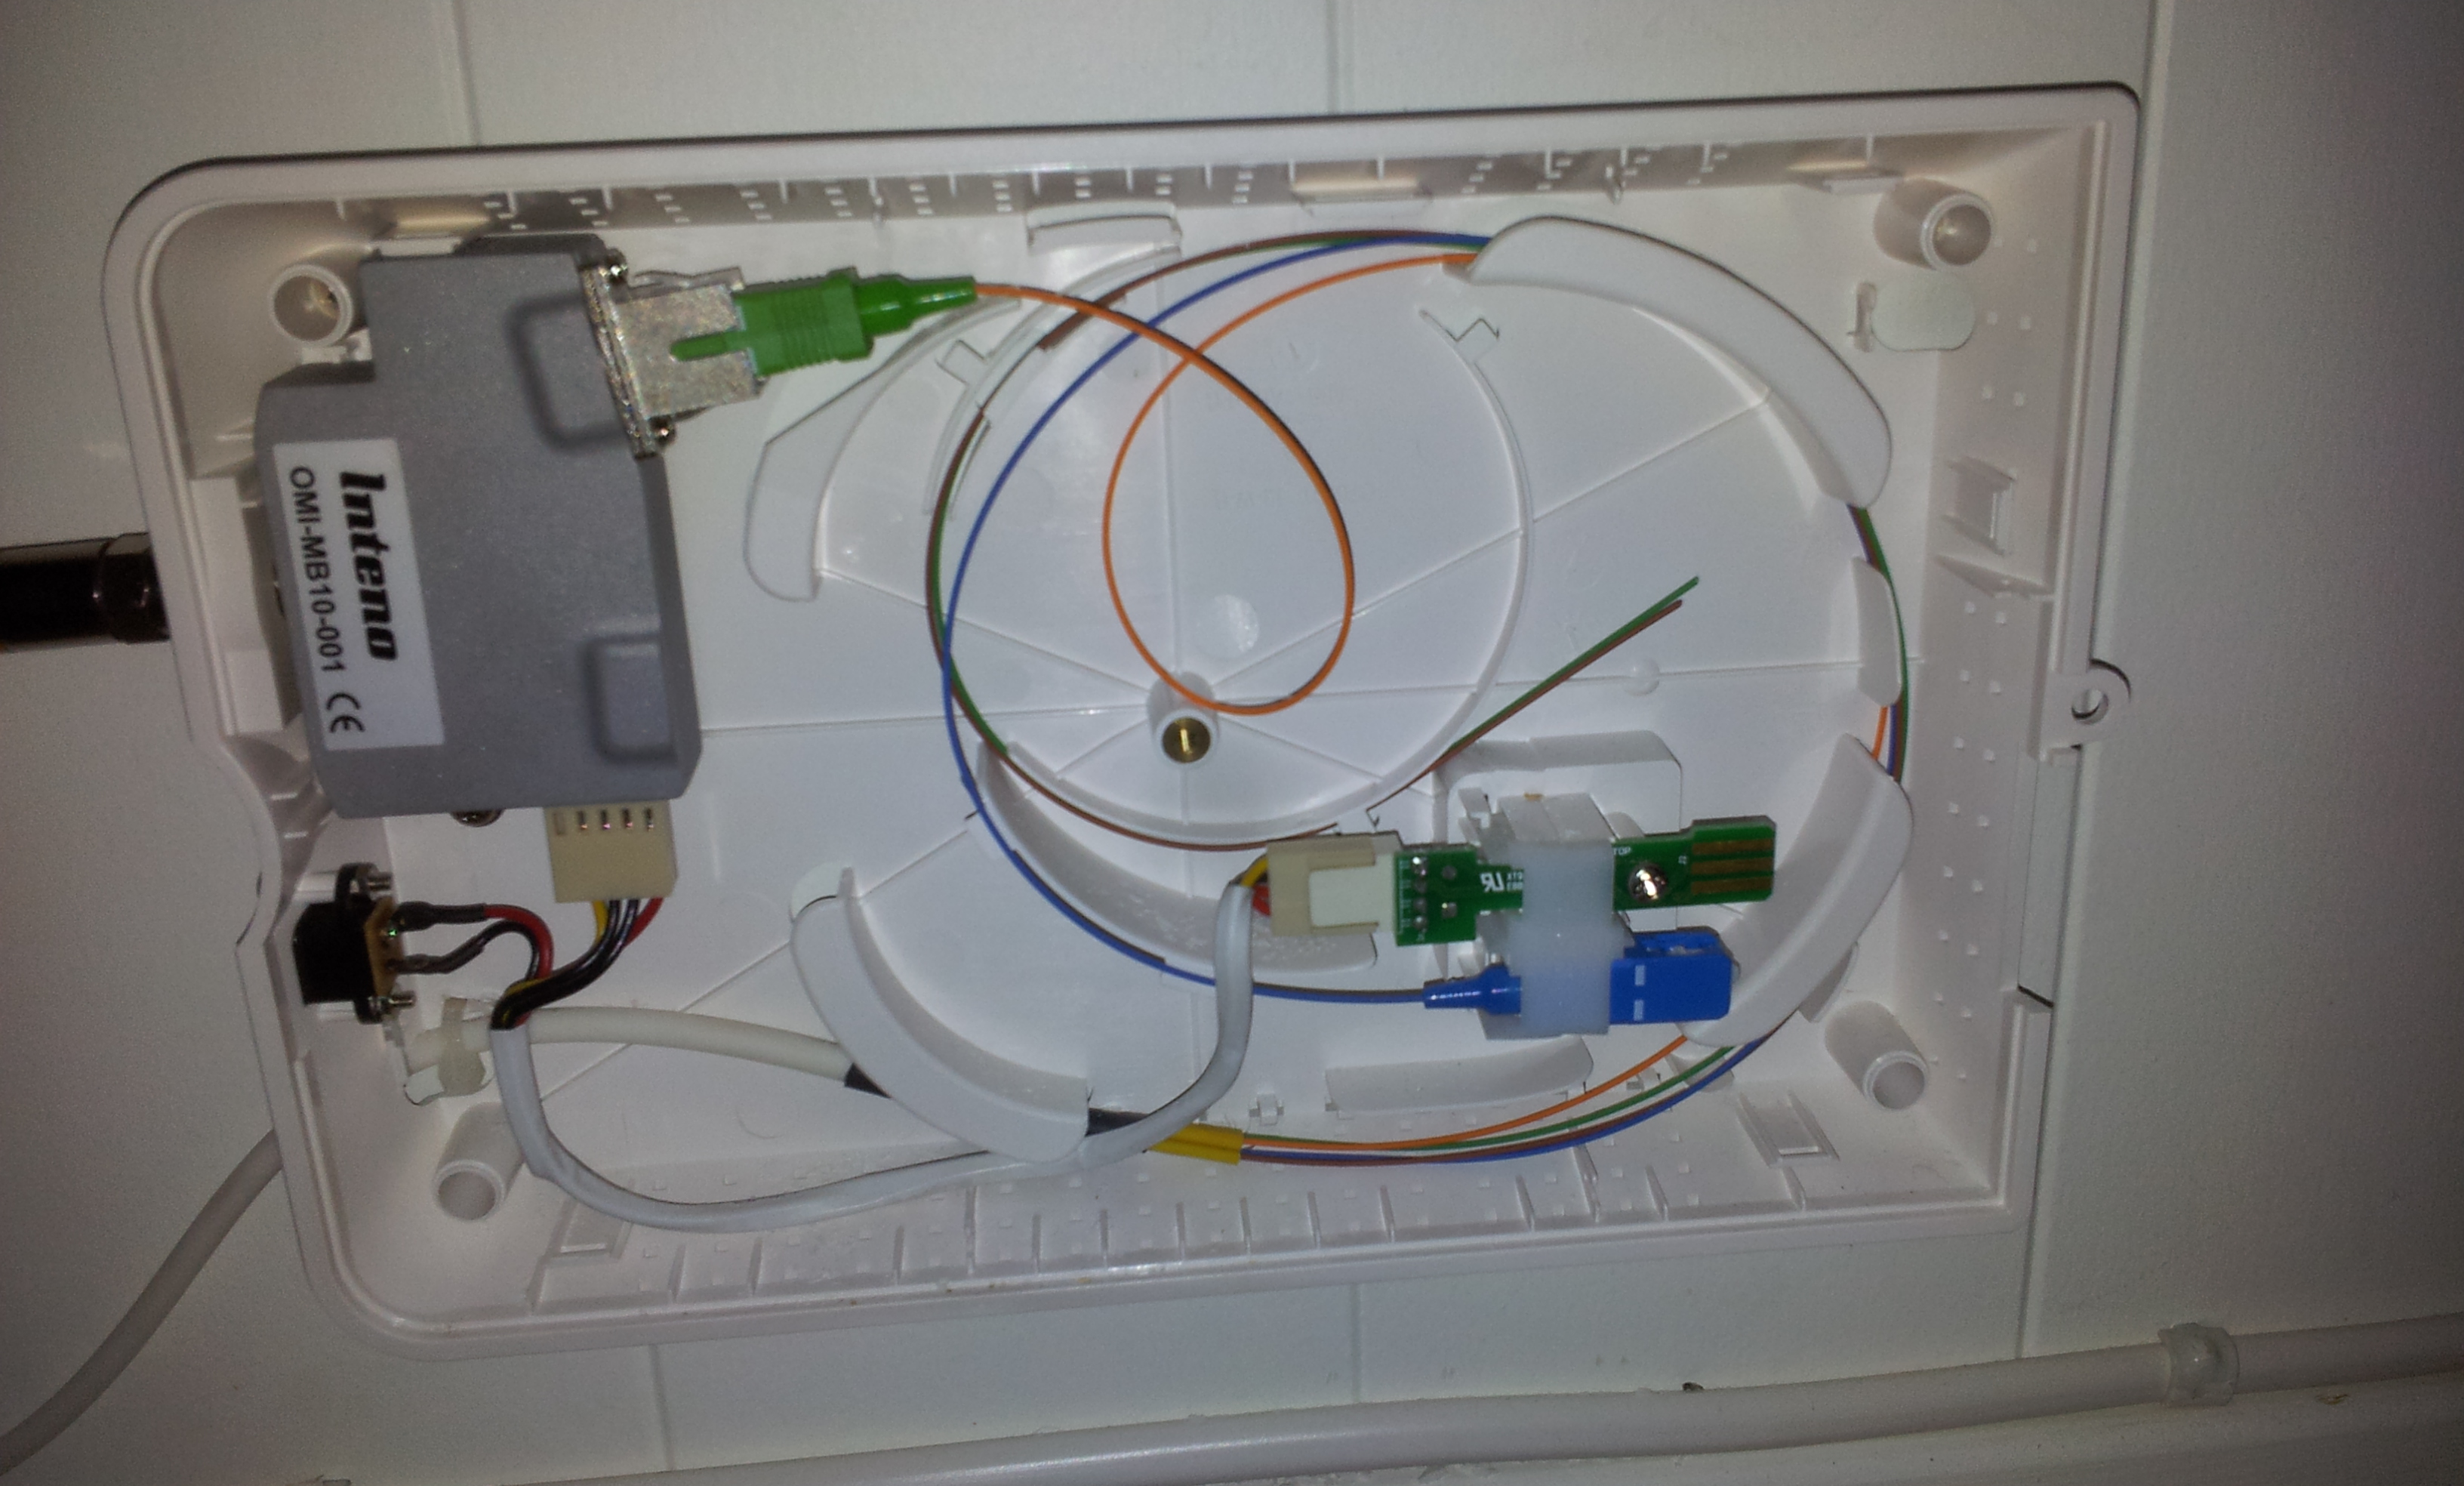 Forlenge kabel til router tilhørende Loqal fiber. - 20120201_232153.jpg - arntos